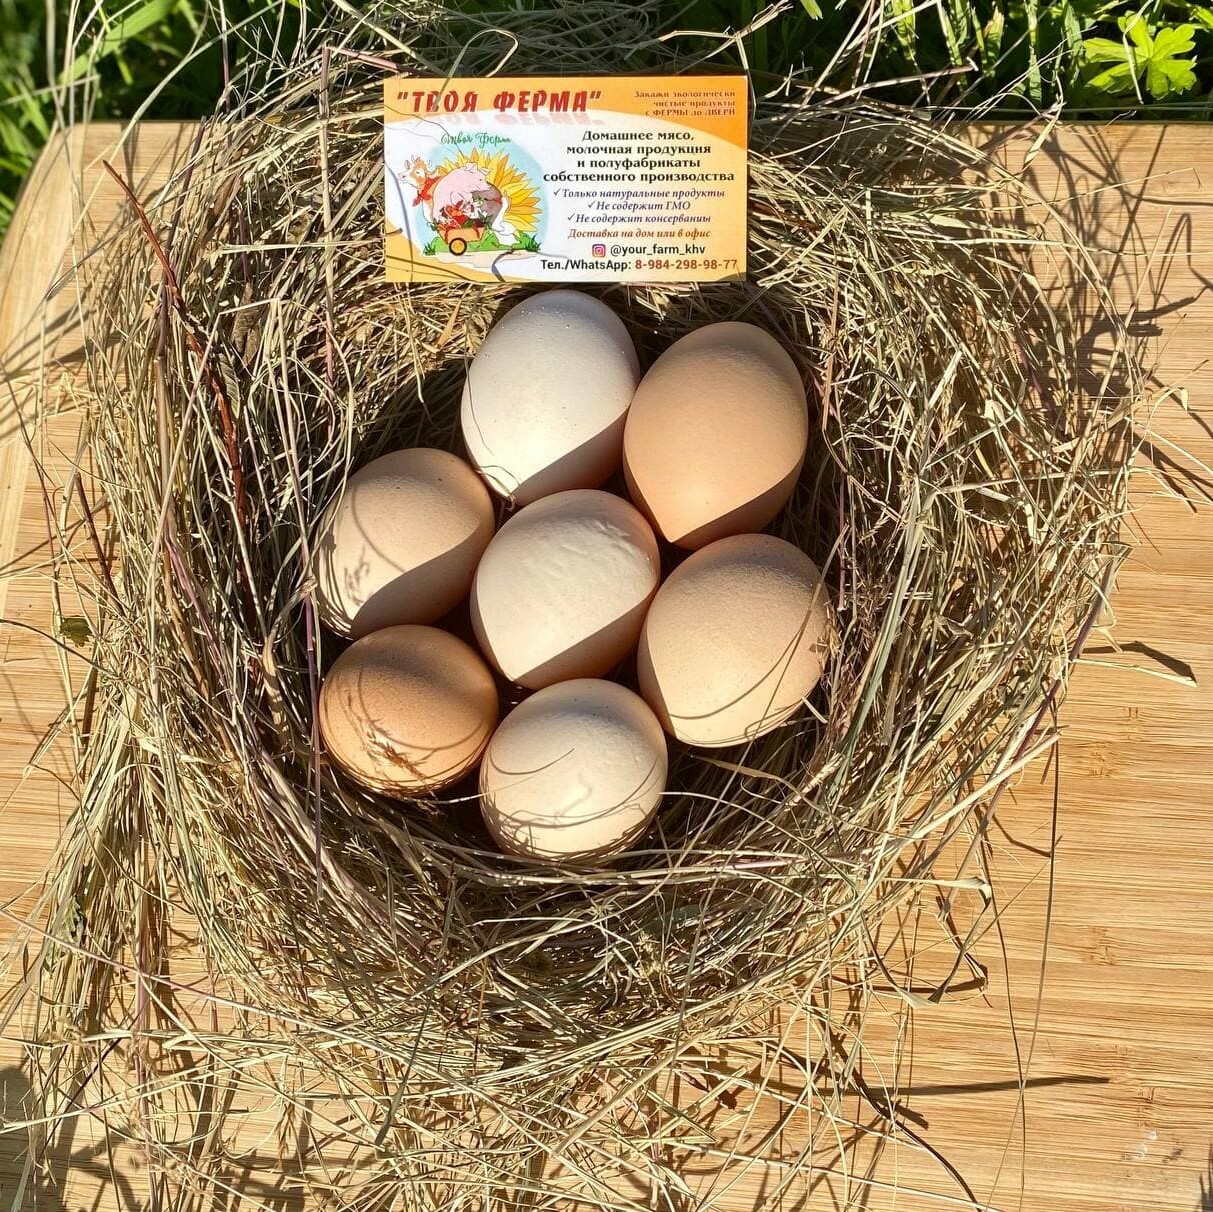 Агрофирма закупает куриные яйца 30 50 42. Яйца куриные лето. Яйца куриные в траве. Какие бывают яйца куриные.